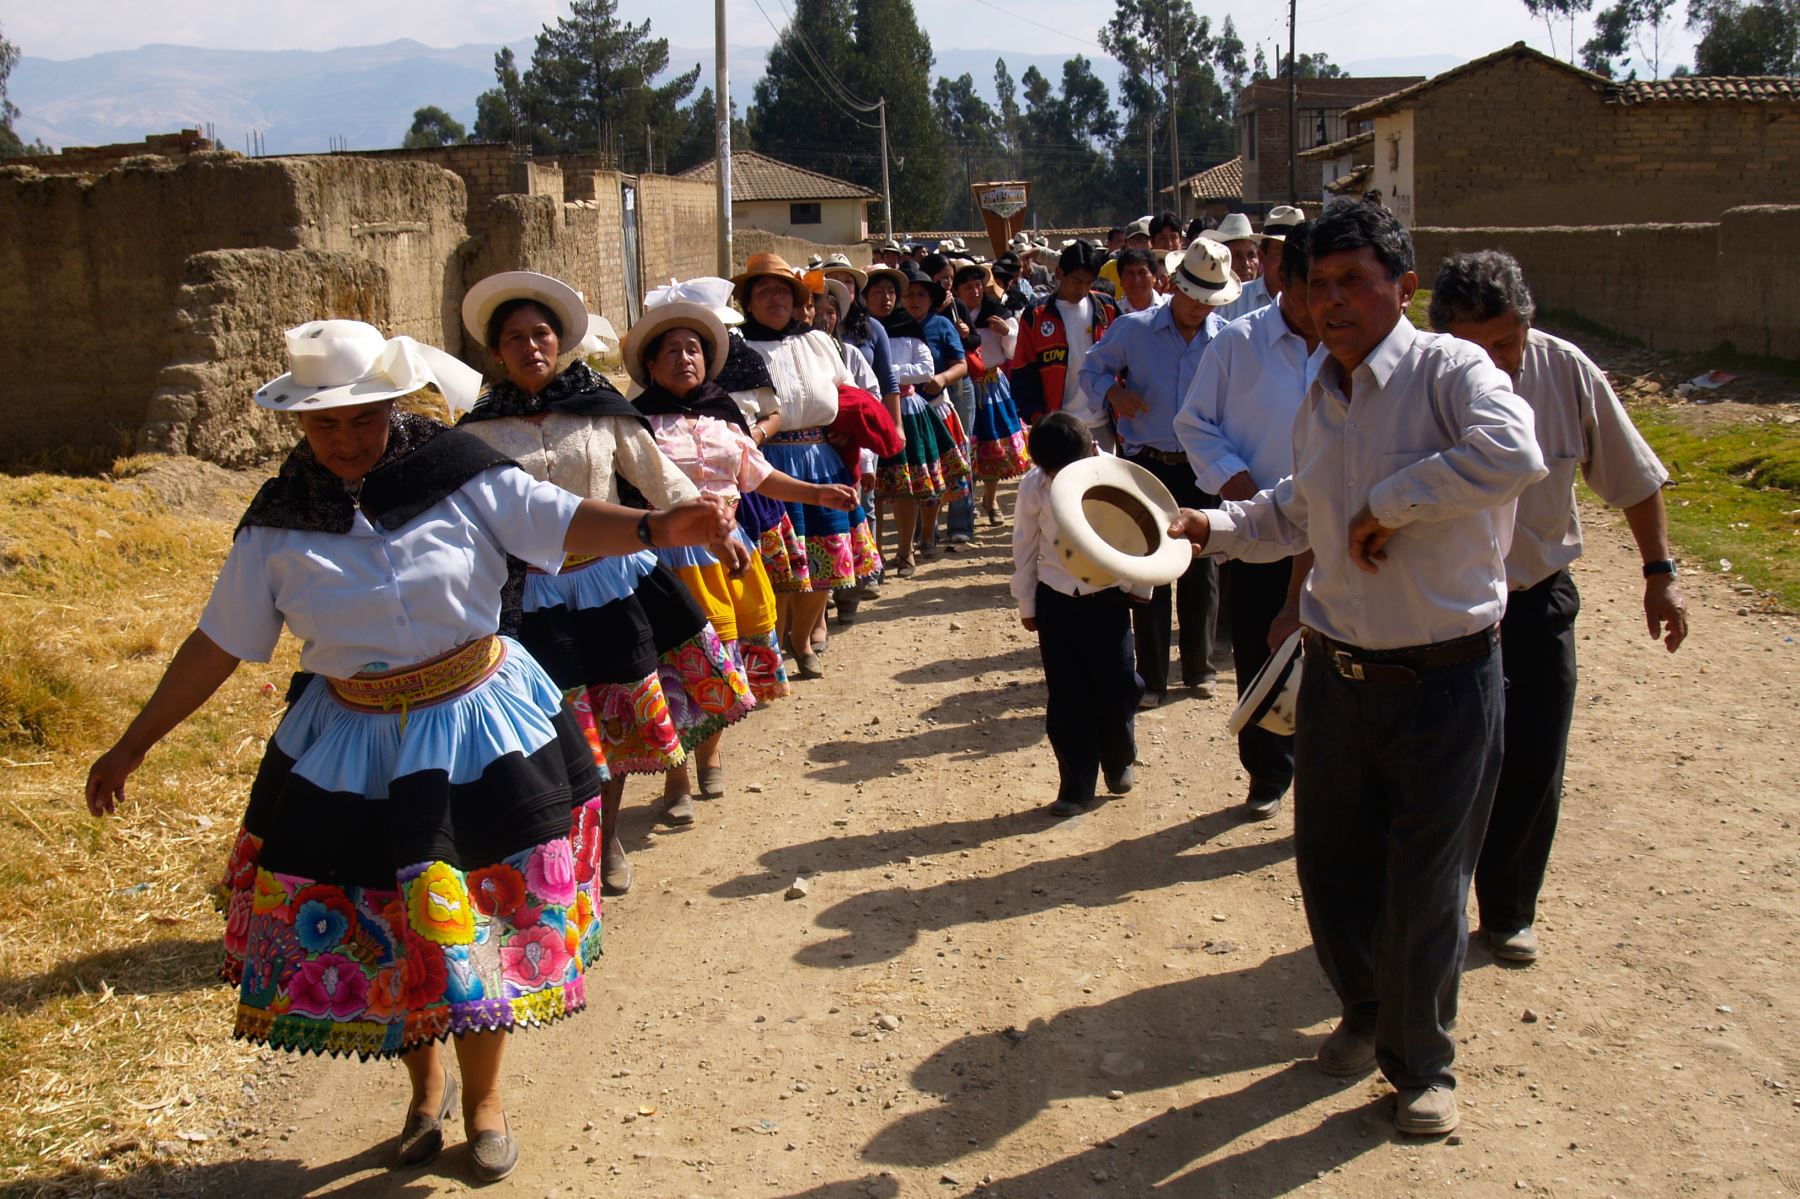 La festividad en honor de Santiago apóstol o Taita Shanti es una de las celebraciones religiosas y culturales más importantes del calendario jubilar en la sierra peruana y en especial del Valle del Mantaro, en el departamento de Junín, donde contribuye a fortalecer la identidad de la población en esta región de los Andes centrales.